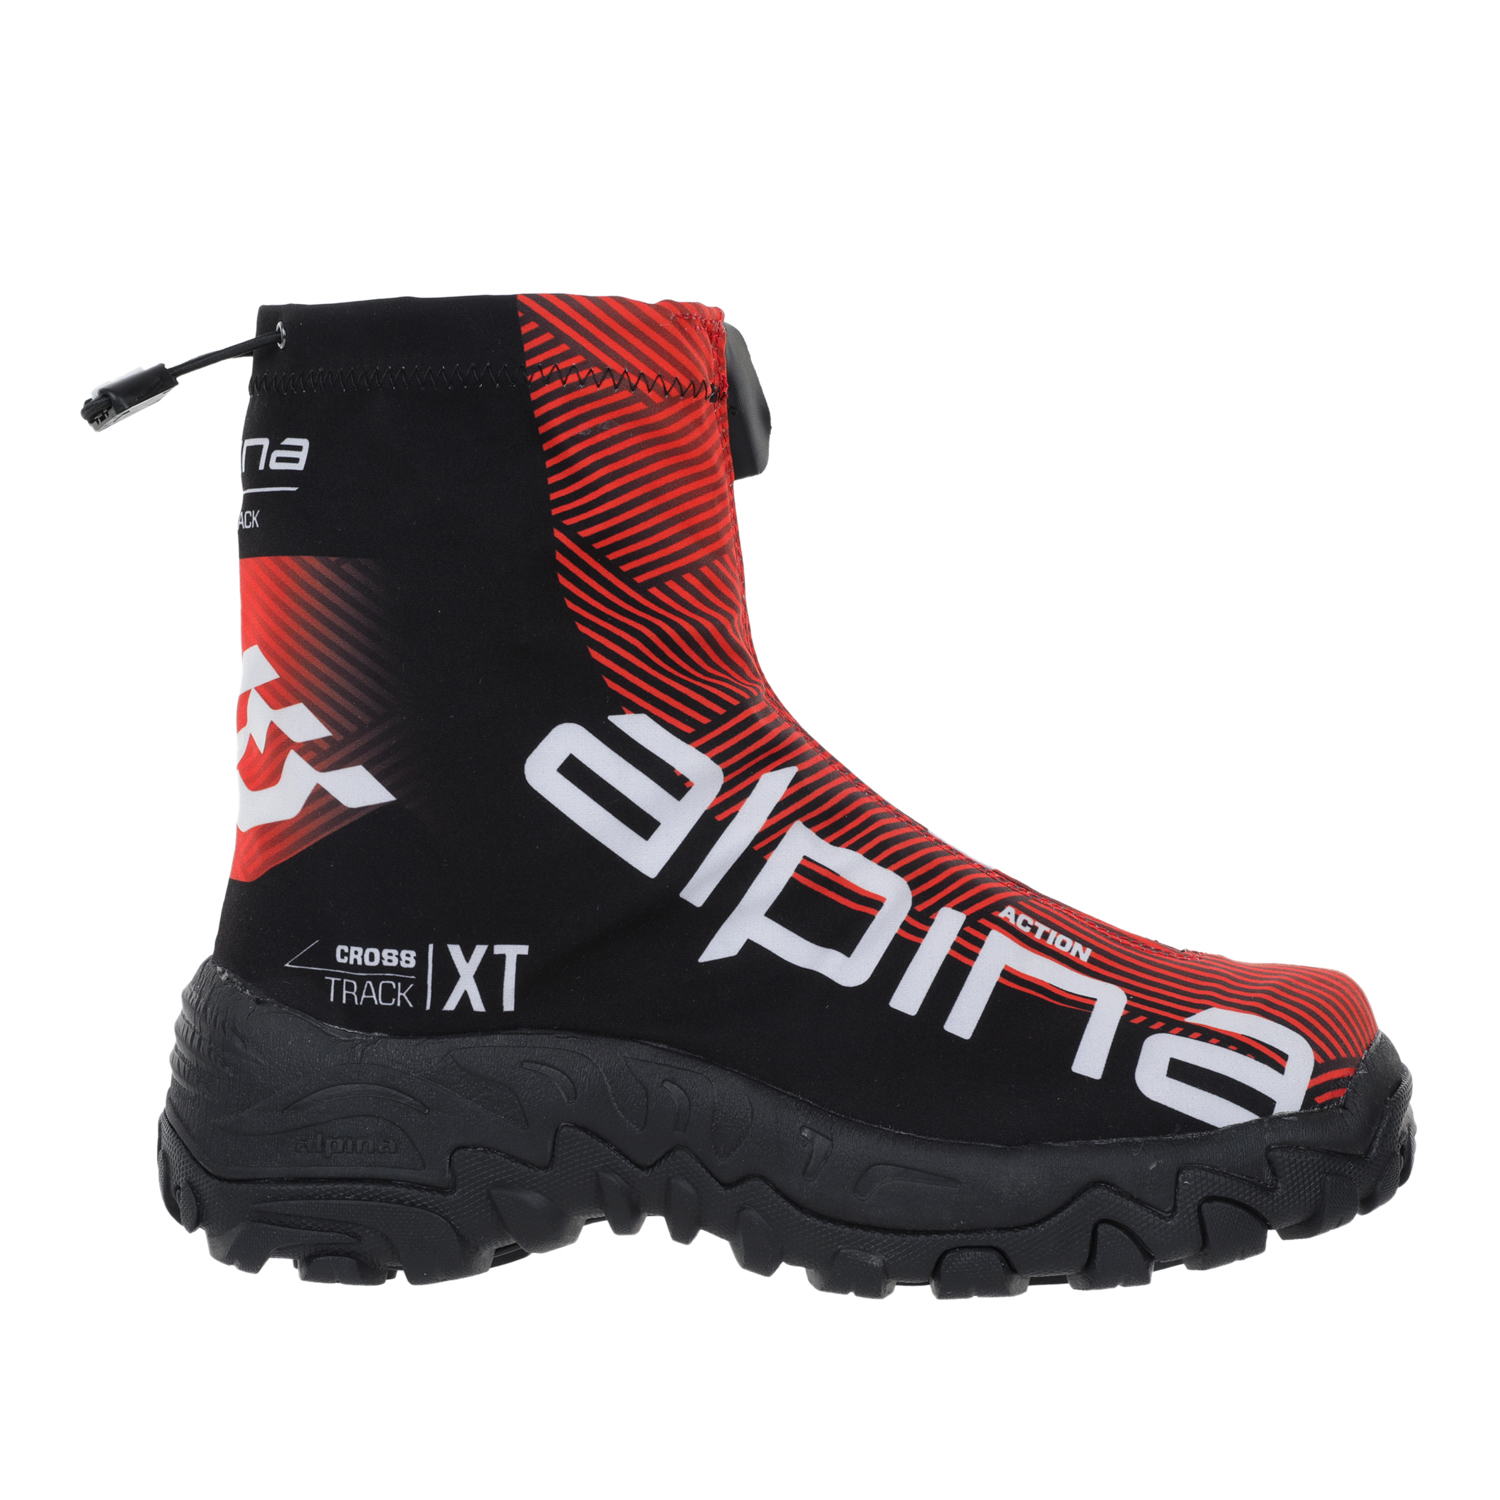 Ботинки Alpina Xt Action, red/black/white, 45 EU